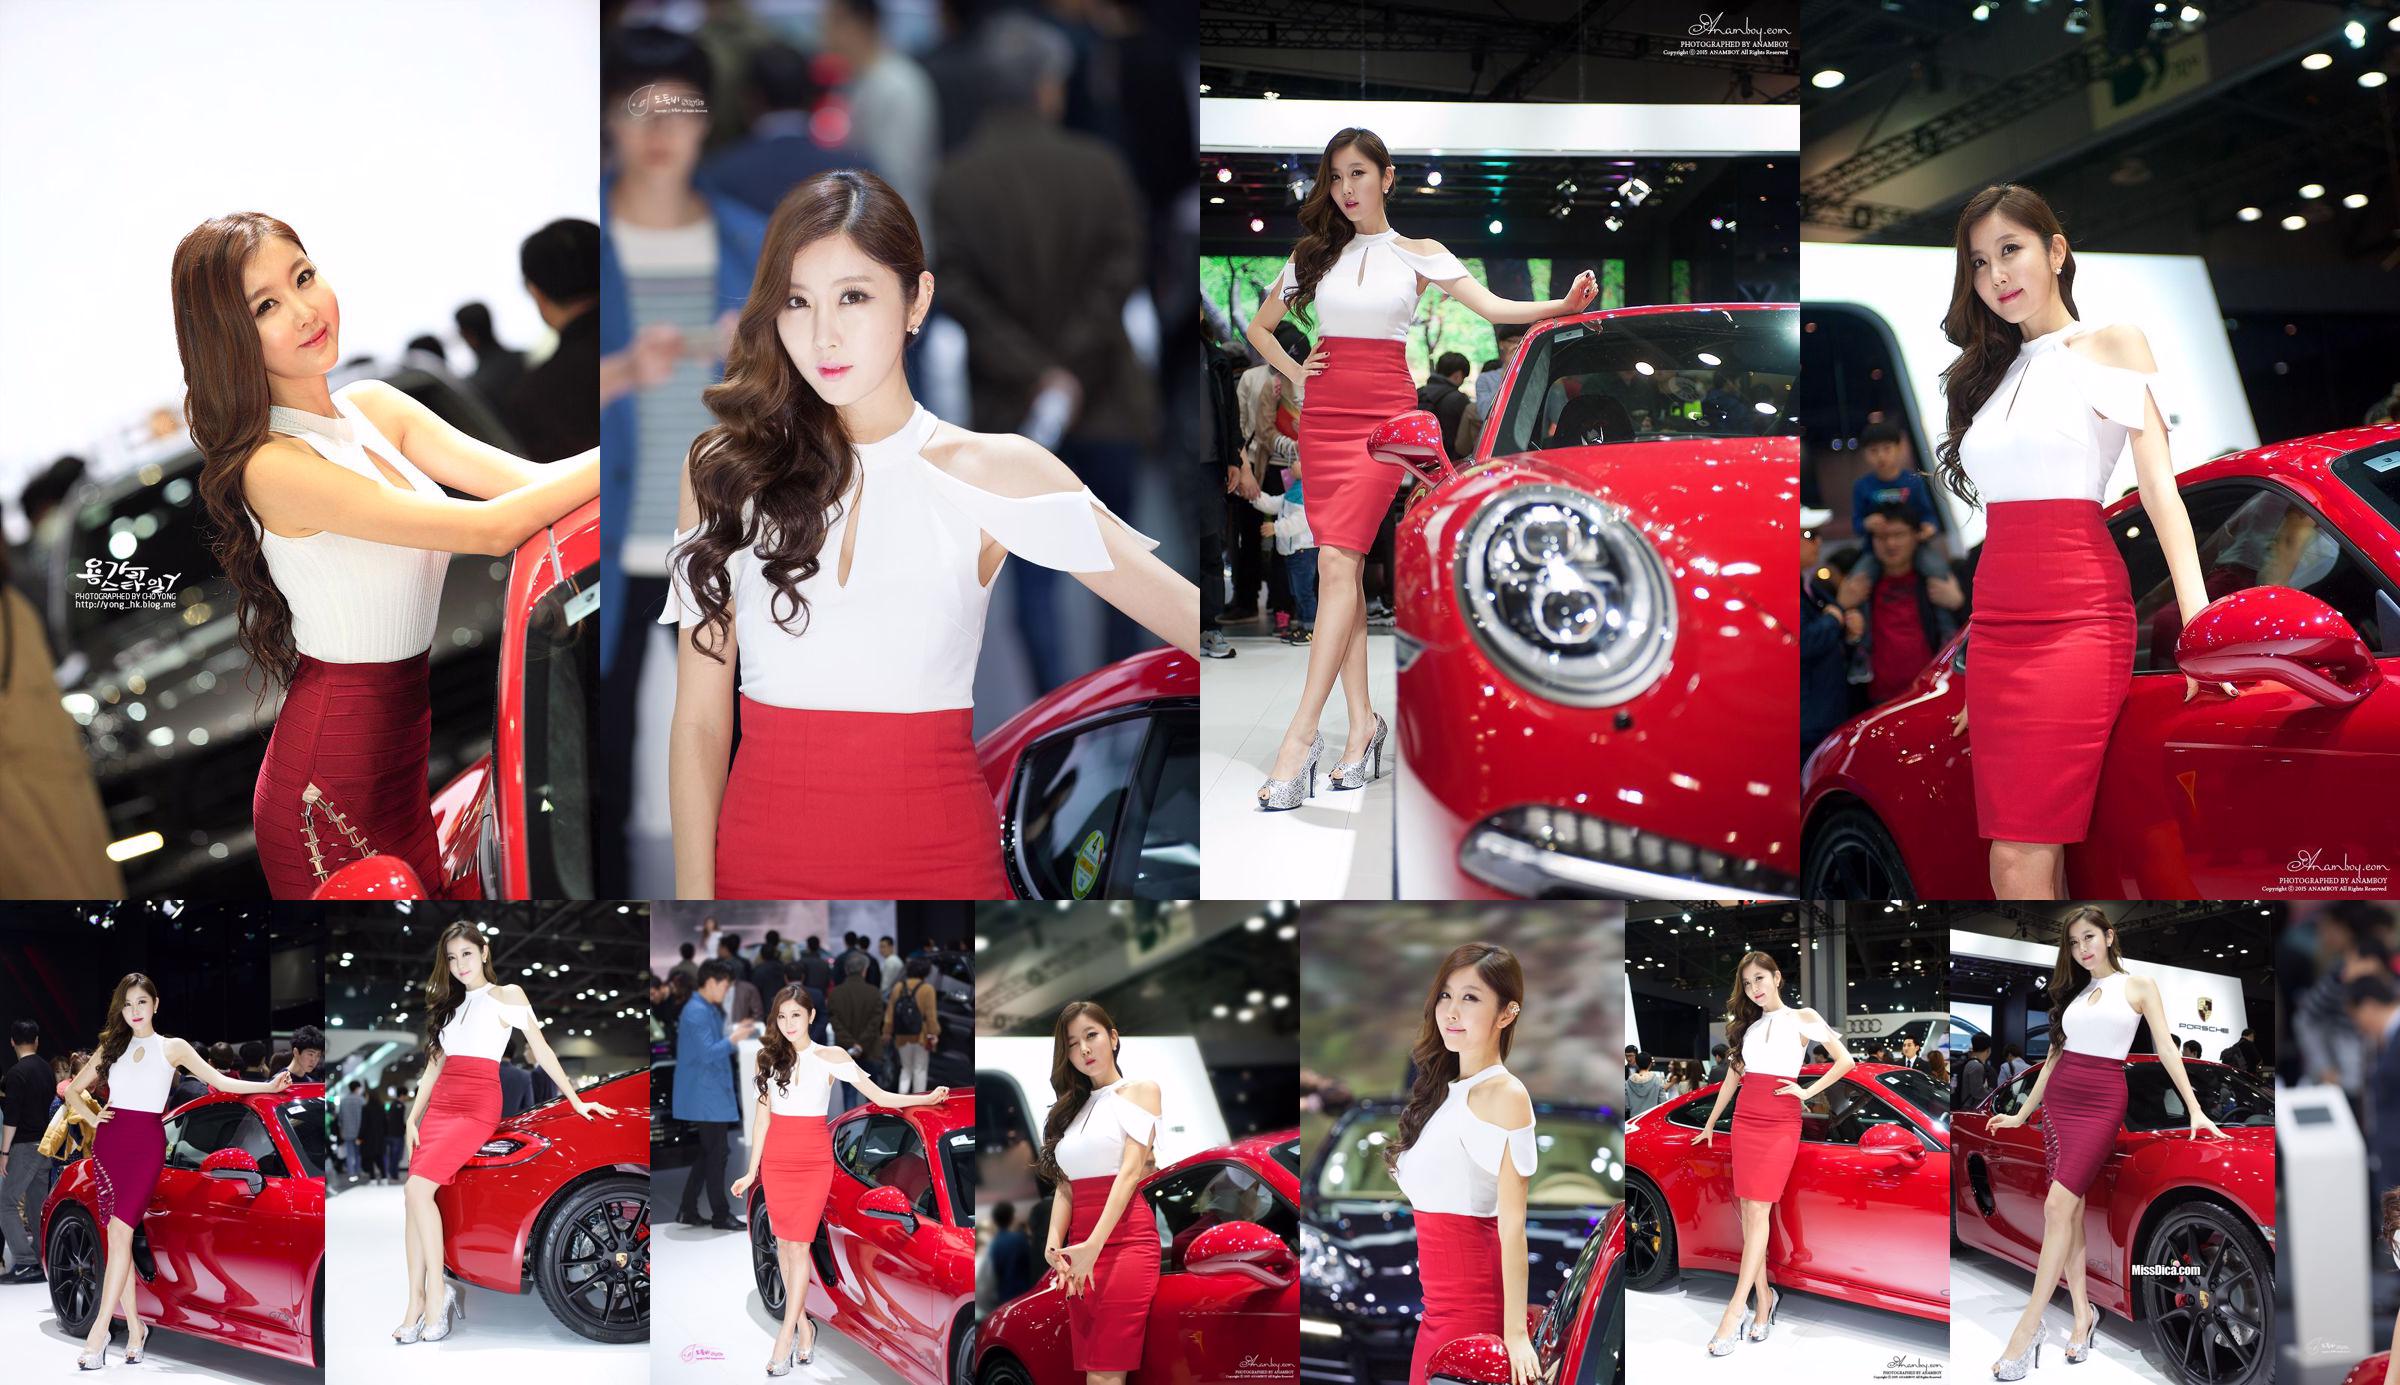 รวมภาพรถเกาหลีรุ่น Cui Xingya / "Red Skirt Series ของ Cui Xinger ที่งานออโต้โชว์" No.fc285b หน้า 11